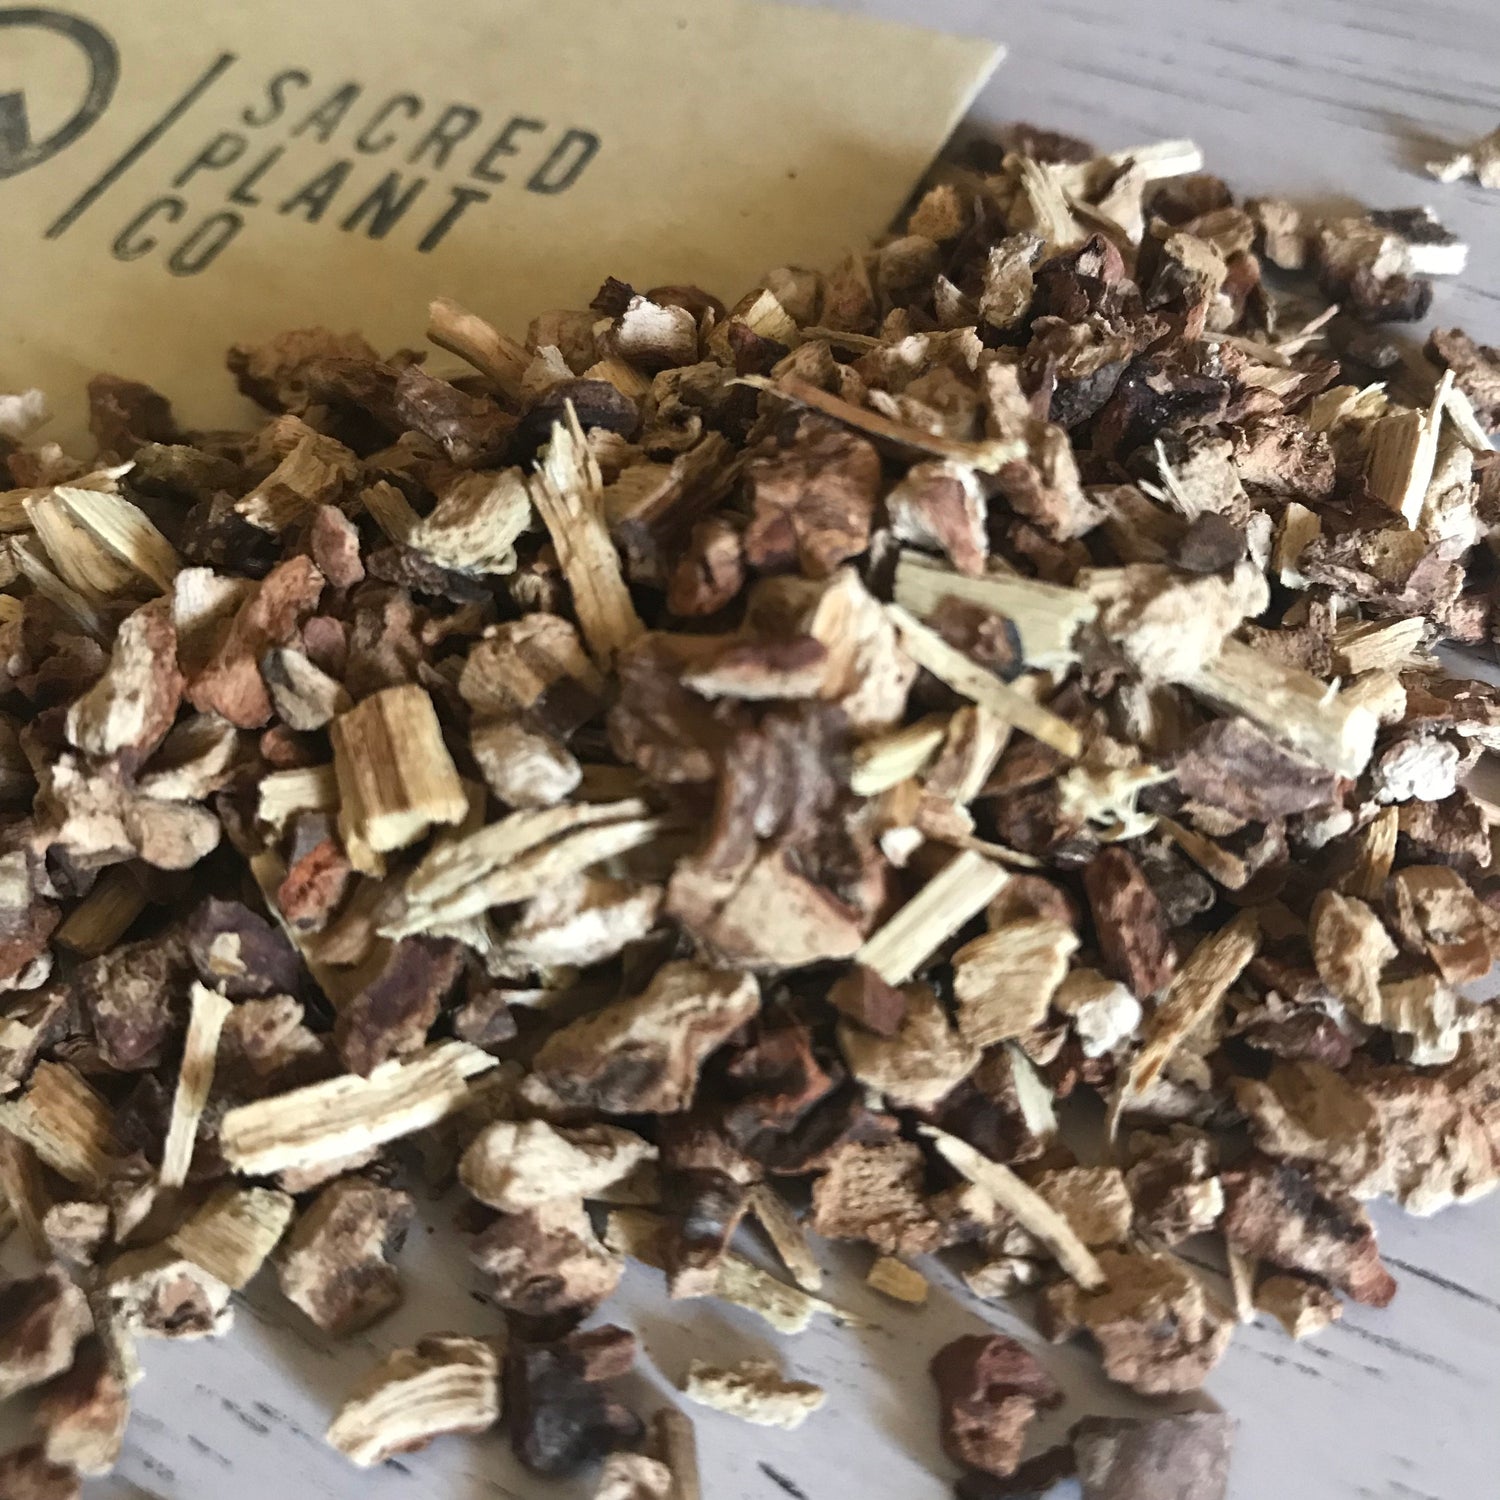 散装菝葜根 - 优质干印度菝葜根 - 传统治疗 Herbant Co